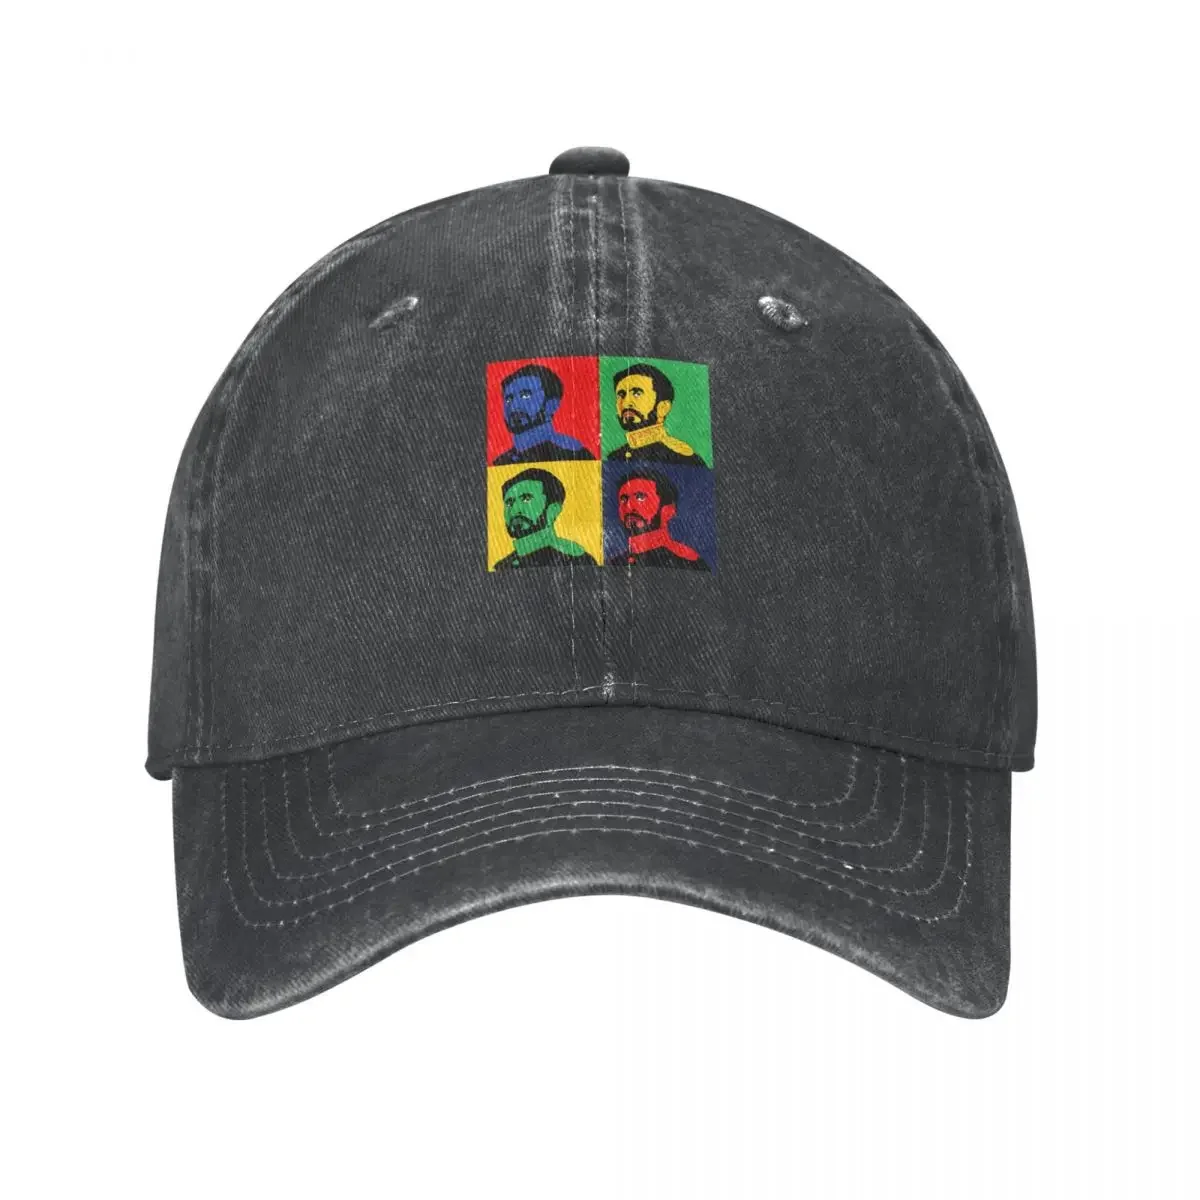 

Ras Tafari Makonnen Pop Art Portrait King Selassie I Cowboy Hat black Luxury Brand Male Hats For Women Men'S